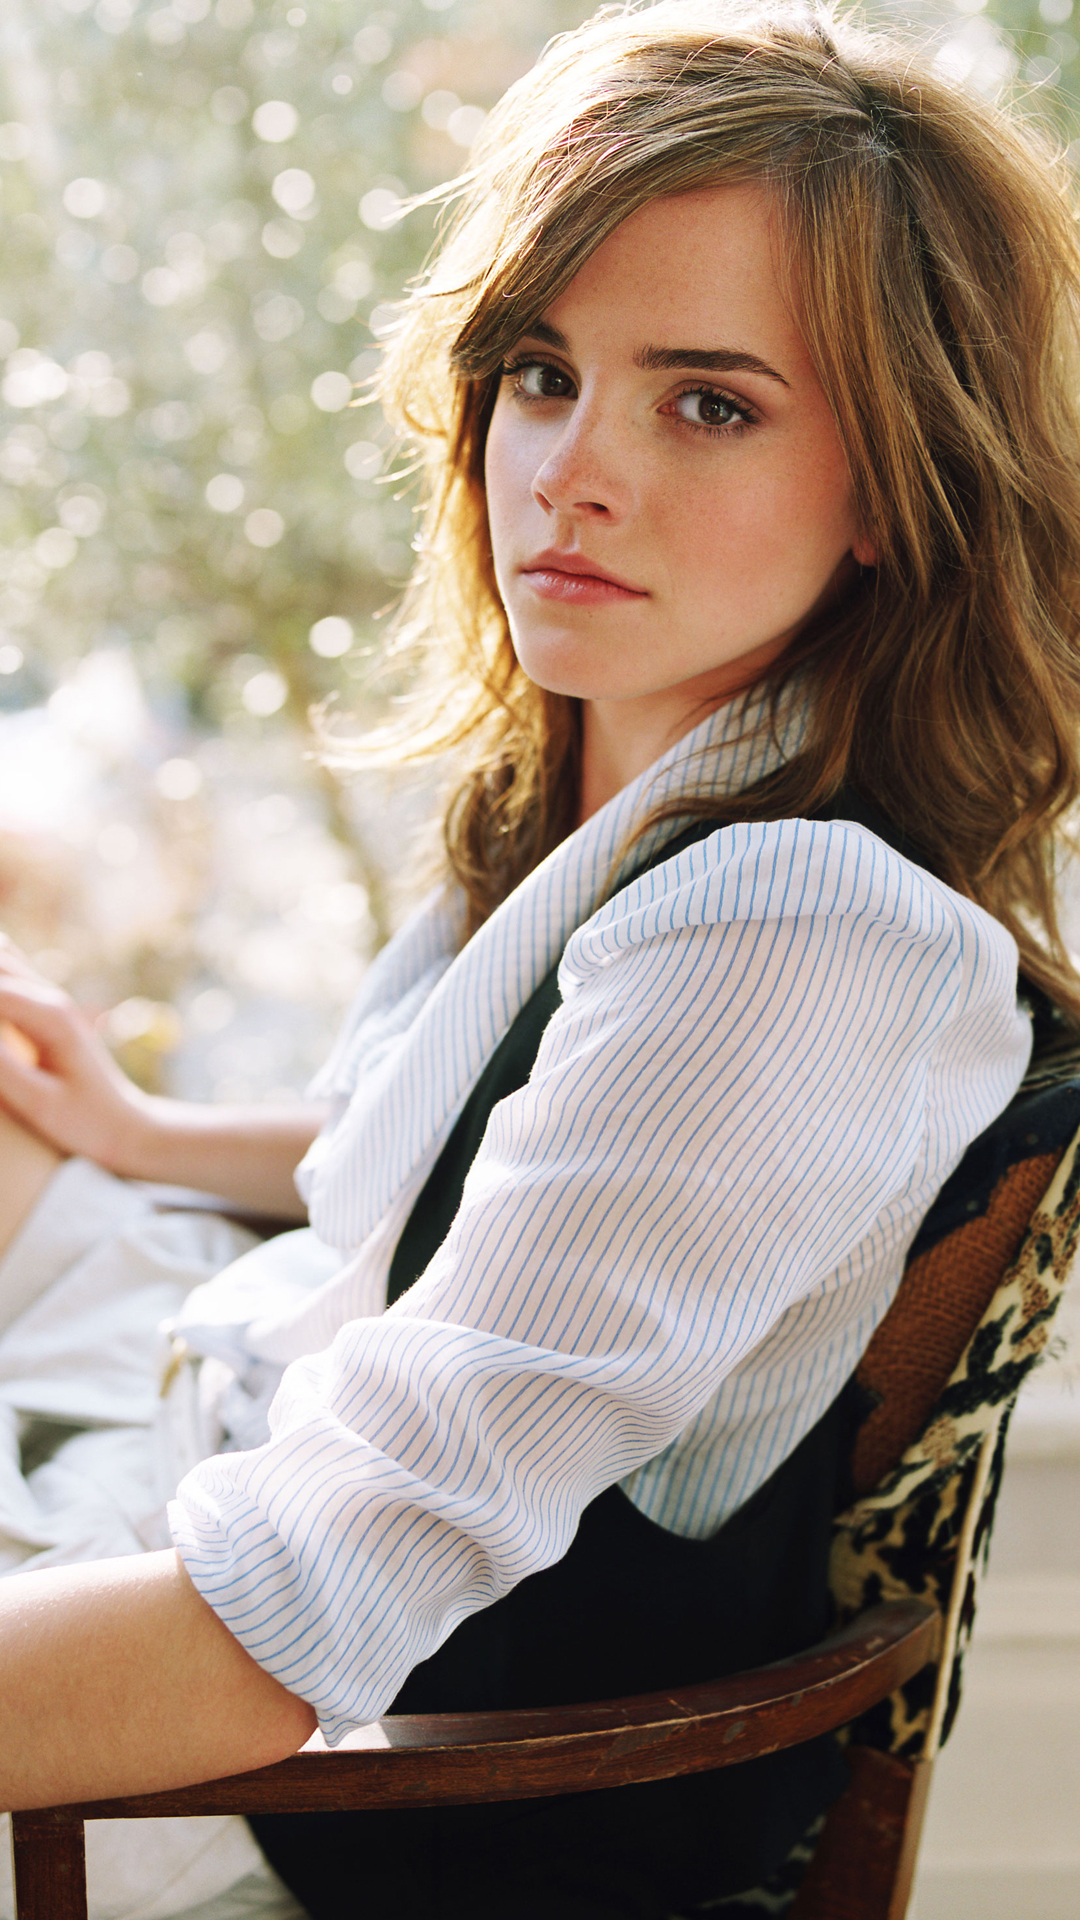 Best Pics Of Emma Watson - HD Wallpaper 